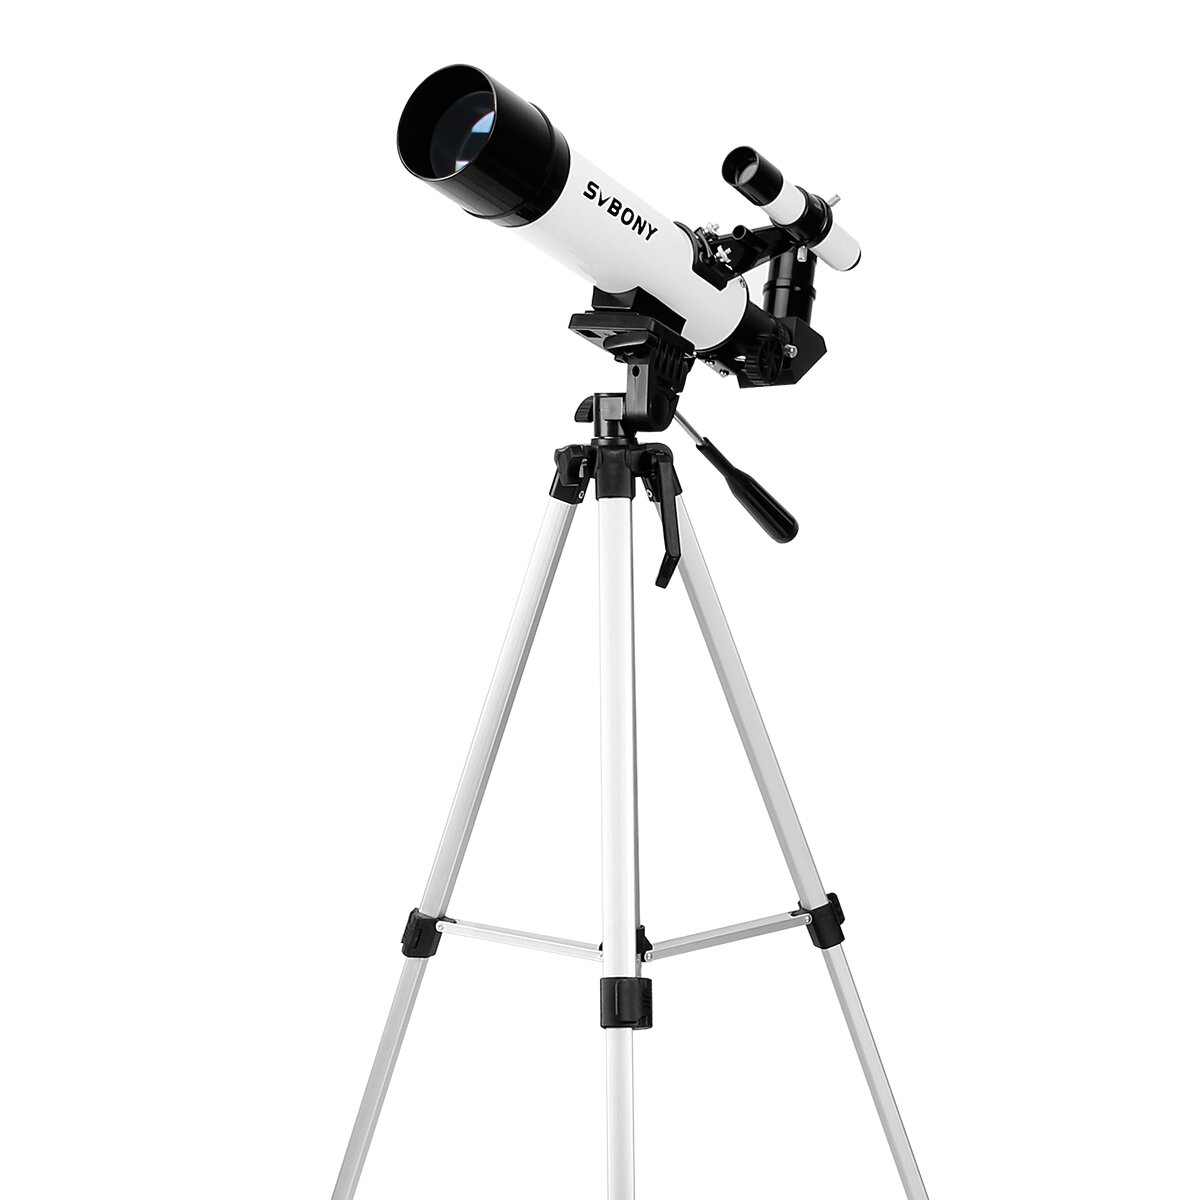 Telescopio astronómico SVBONY SV25 con lente Barlow 3X, buscador óptico de visión de aves y monocular con trípode